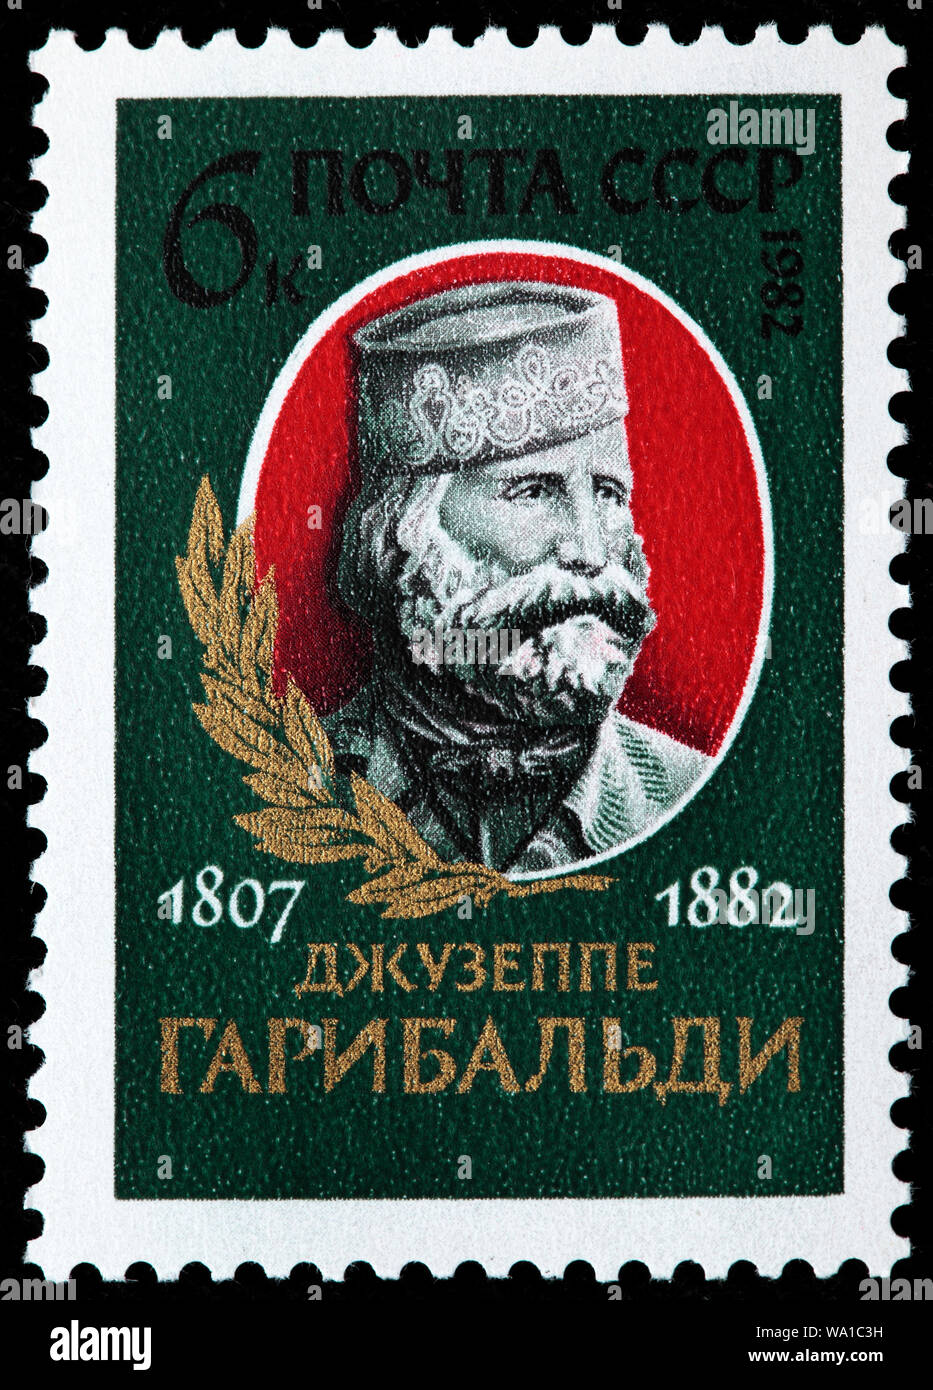 Giuseppe Garibaldi (1807-1882), général italien, timbre-poste, Russie, URSS, 1982 Banque D'Images